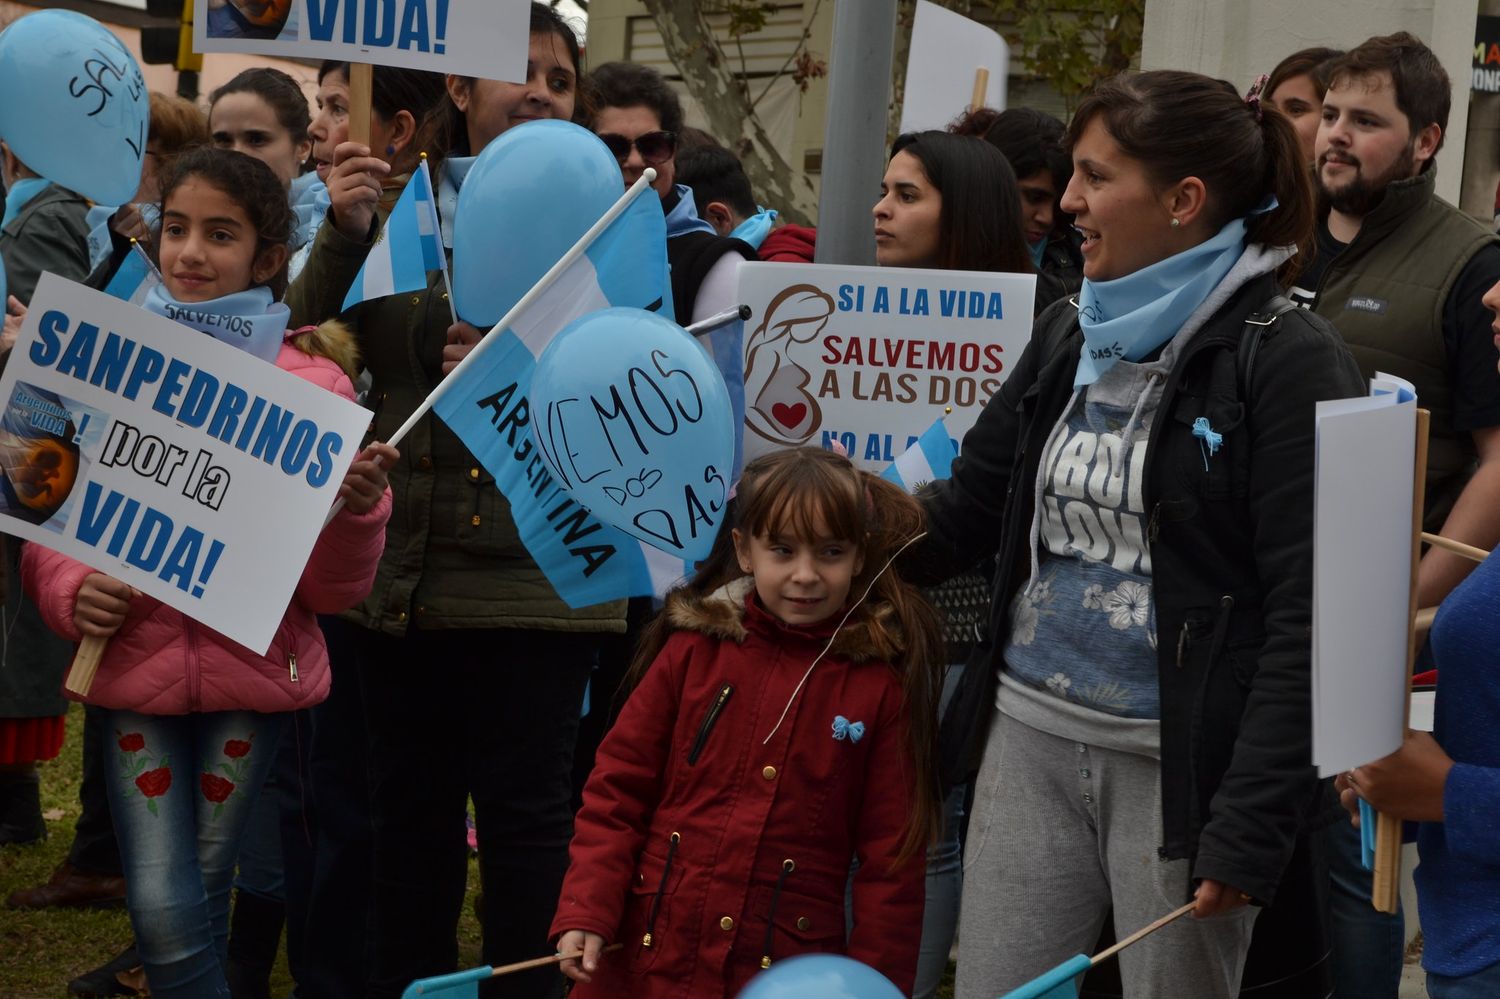 La “marcha por las dos vidas” contra el proyecto de aborto legal tendrá réplica en San Pedro